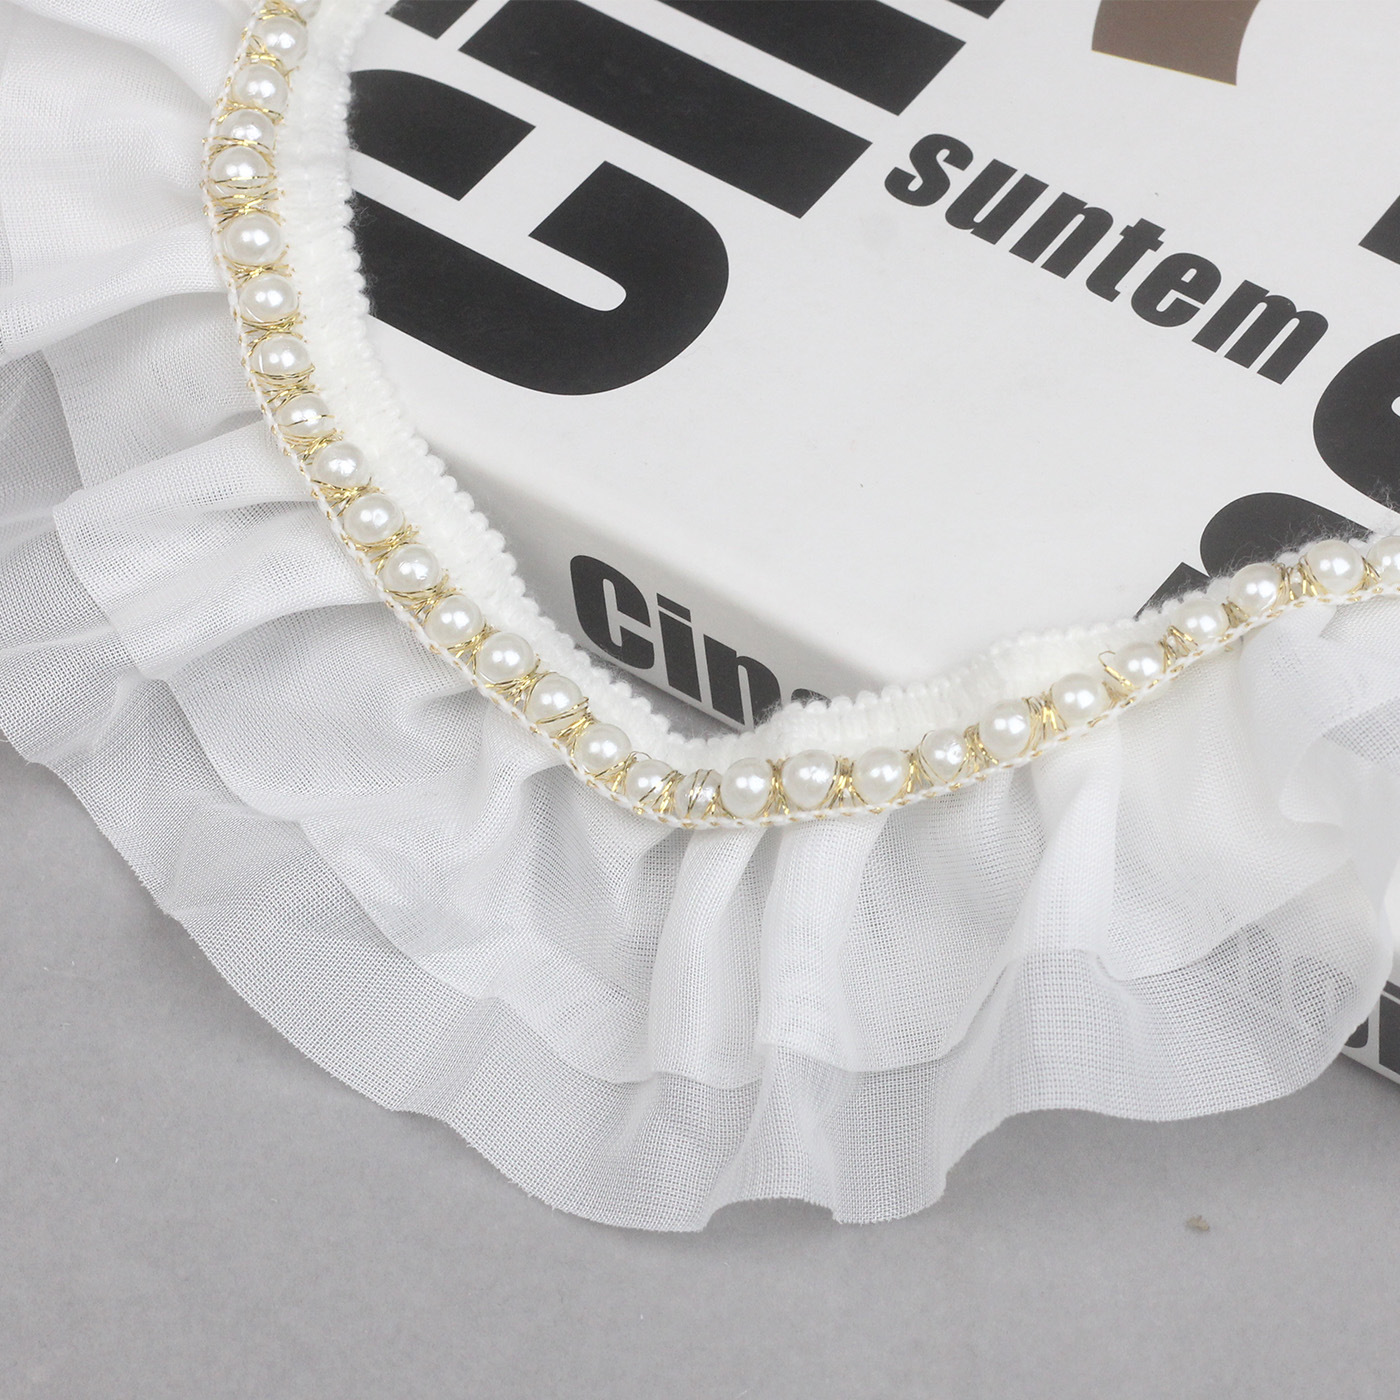 现货6cm双层雪纺珍珠蕾丝生日蛋糕装饰烘焙围边钉珠打折花边高盛g1501